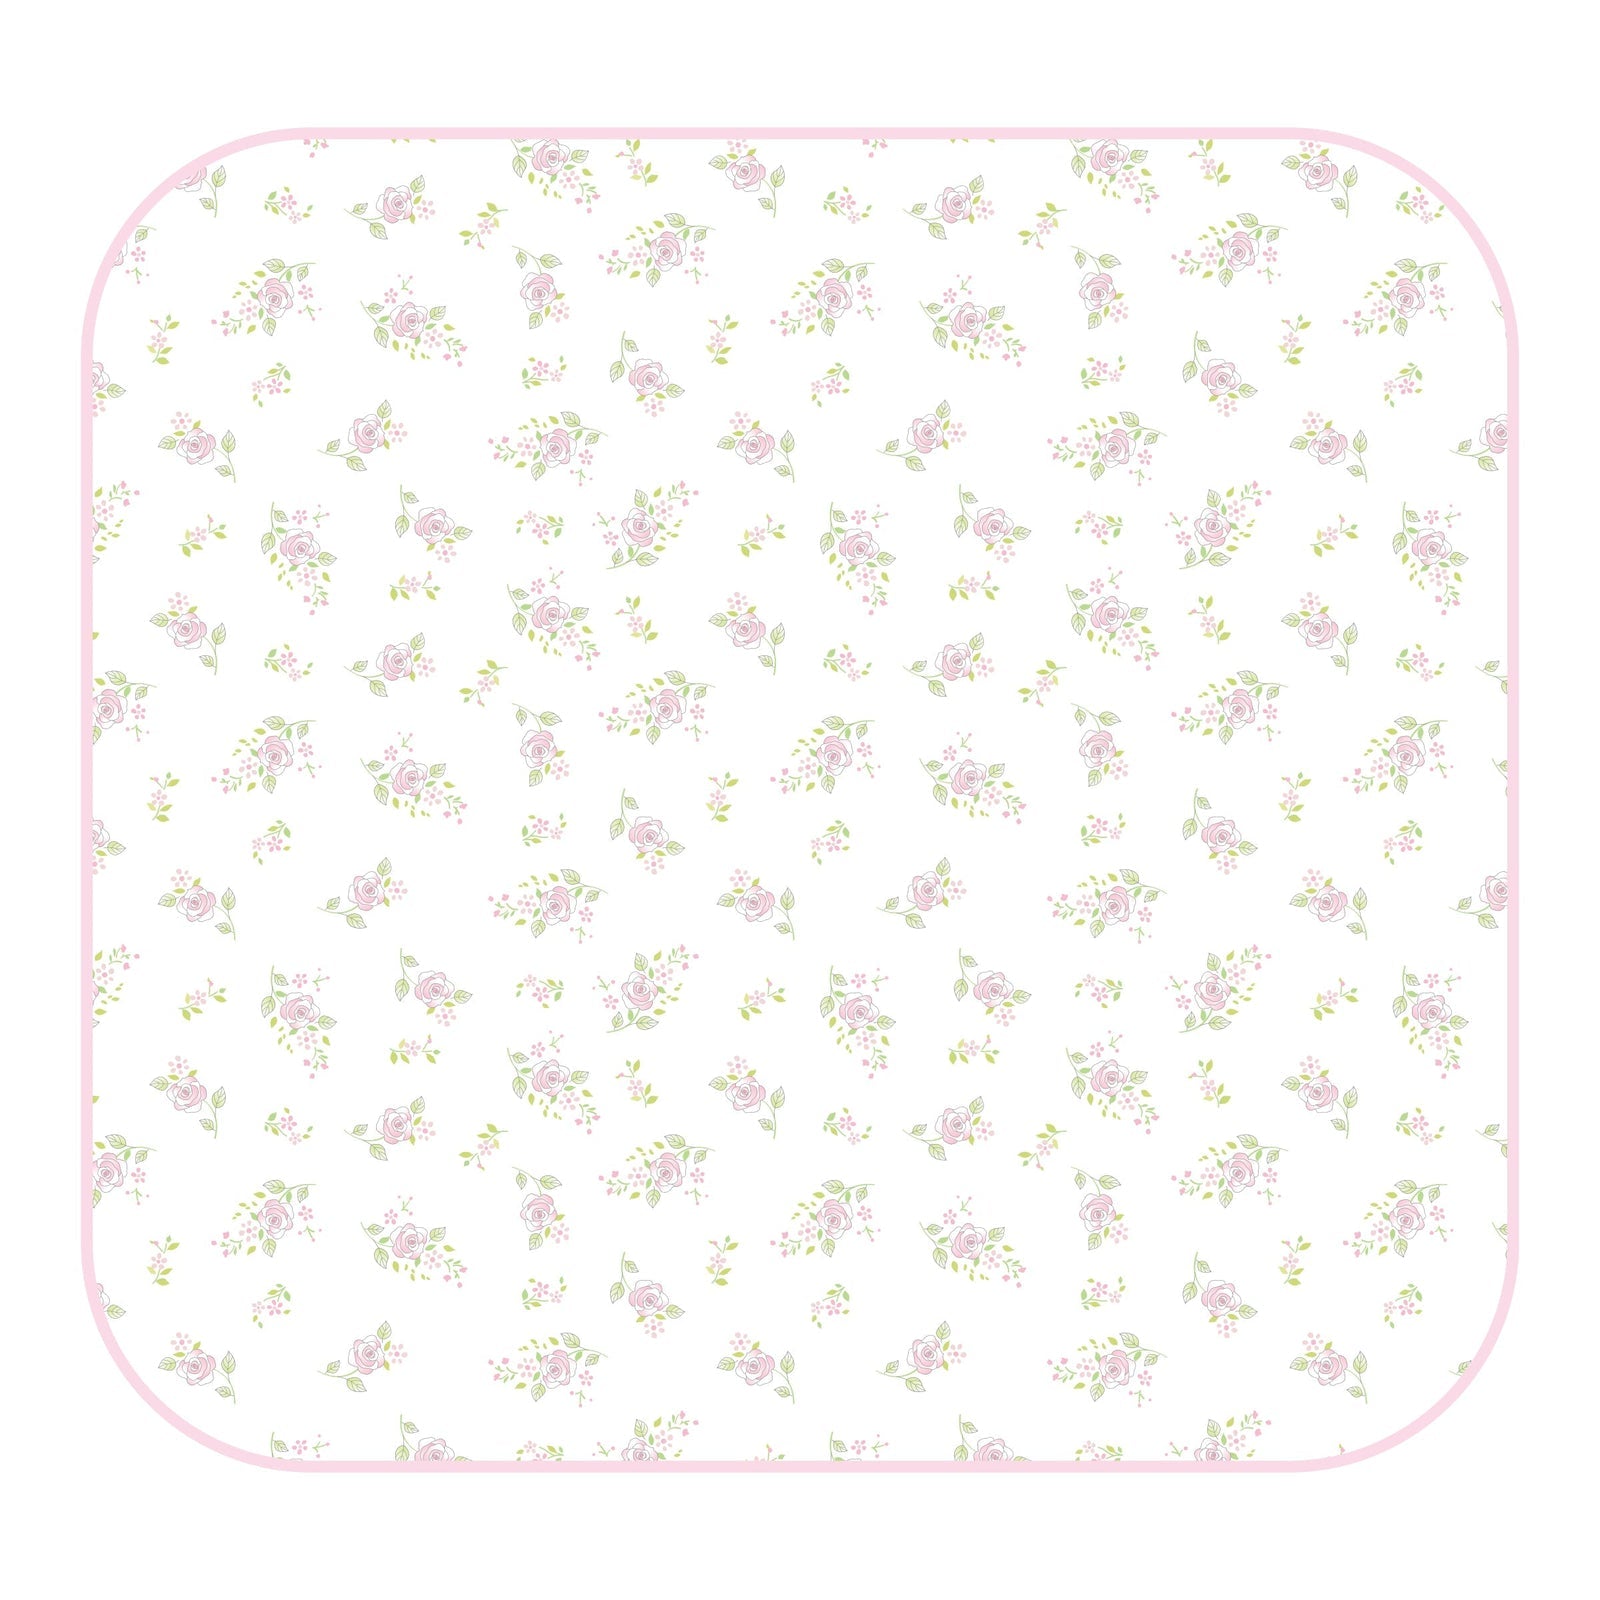 Hope's Rose Spring Print Swaddle Blanket | Pink